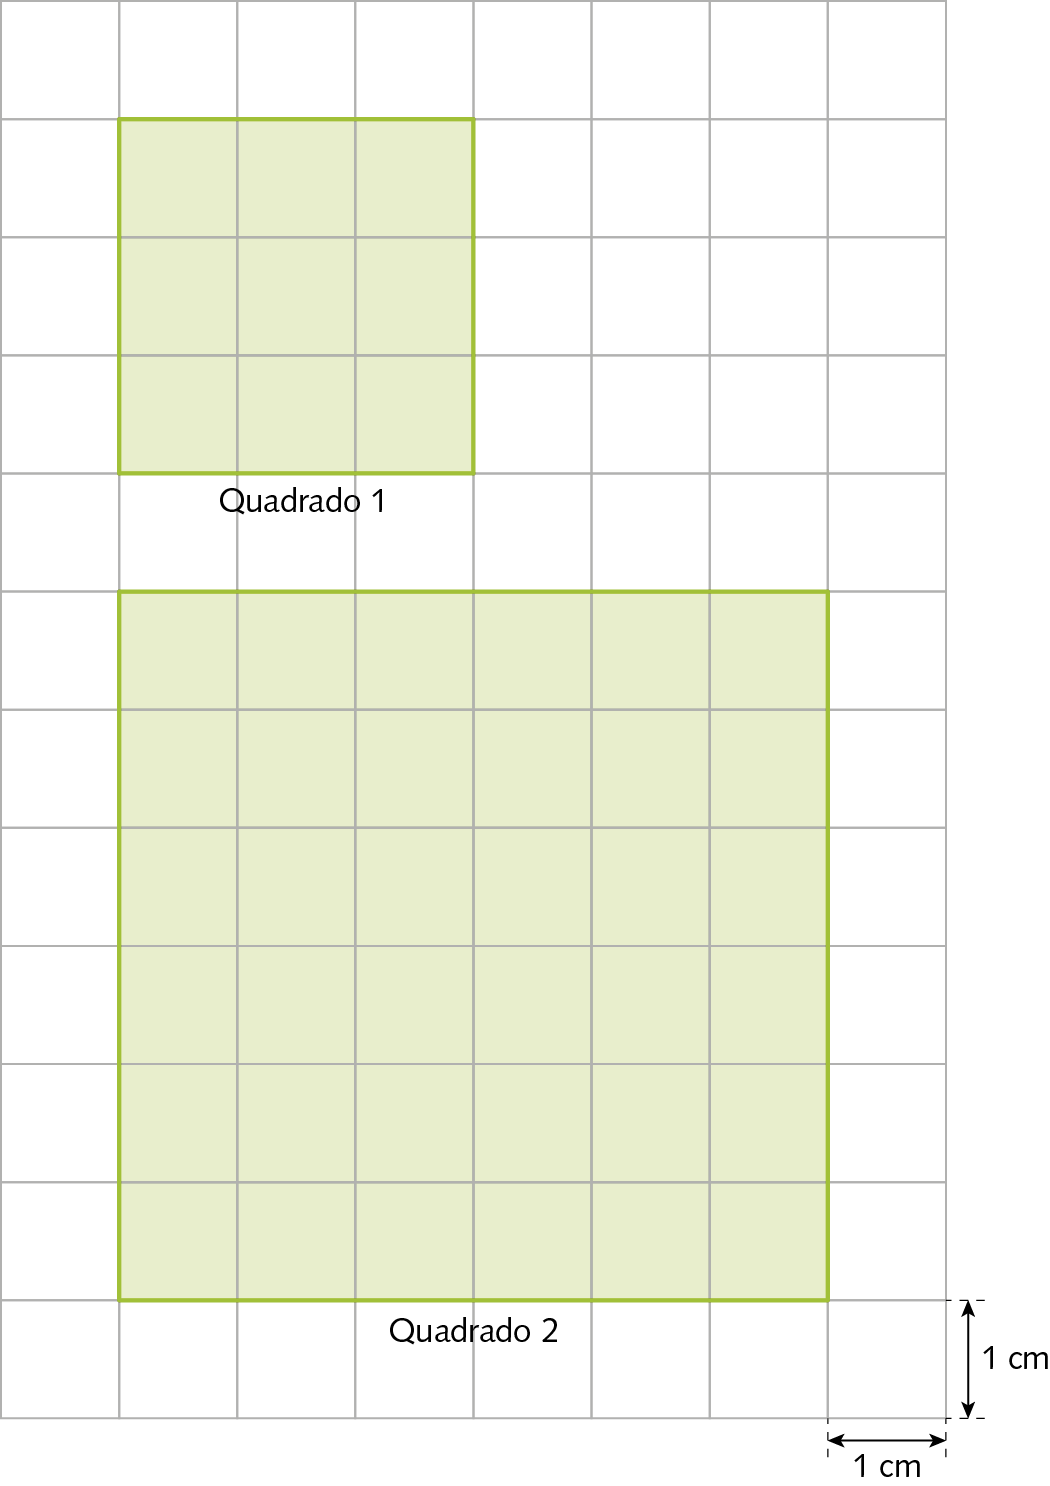 Ilustração. Malha quadriculada. Quadrado 1 de 3 quadradinhos por 3 quadradinhos. Quadrado 2 de 6 quadradinhos por 6 quadradinhos. Cada quadradinho mede 1 centímetro por 1 centímetro.